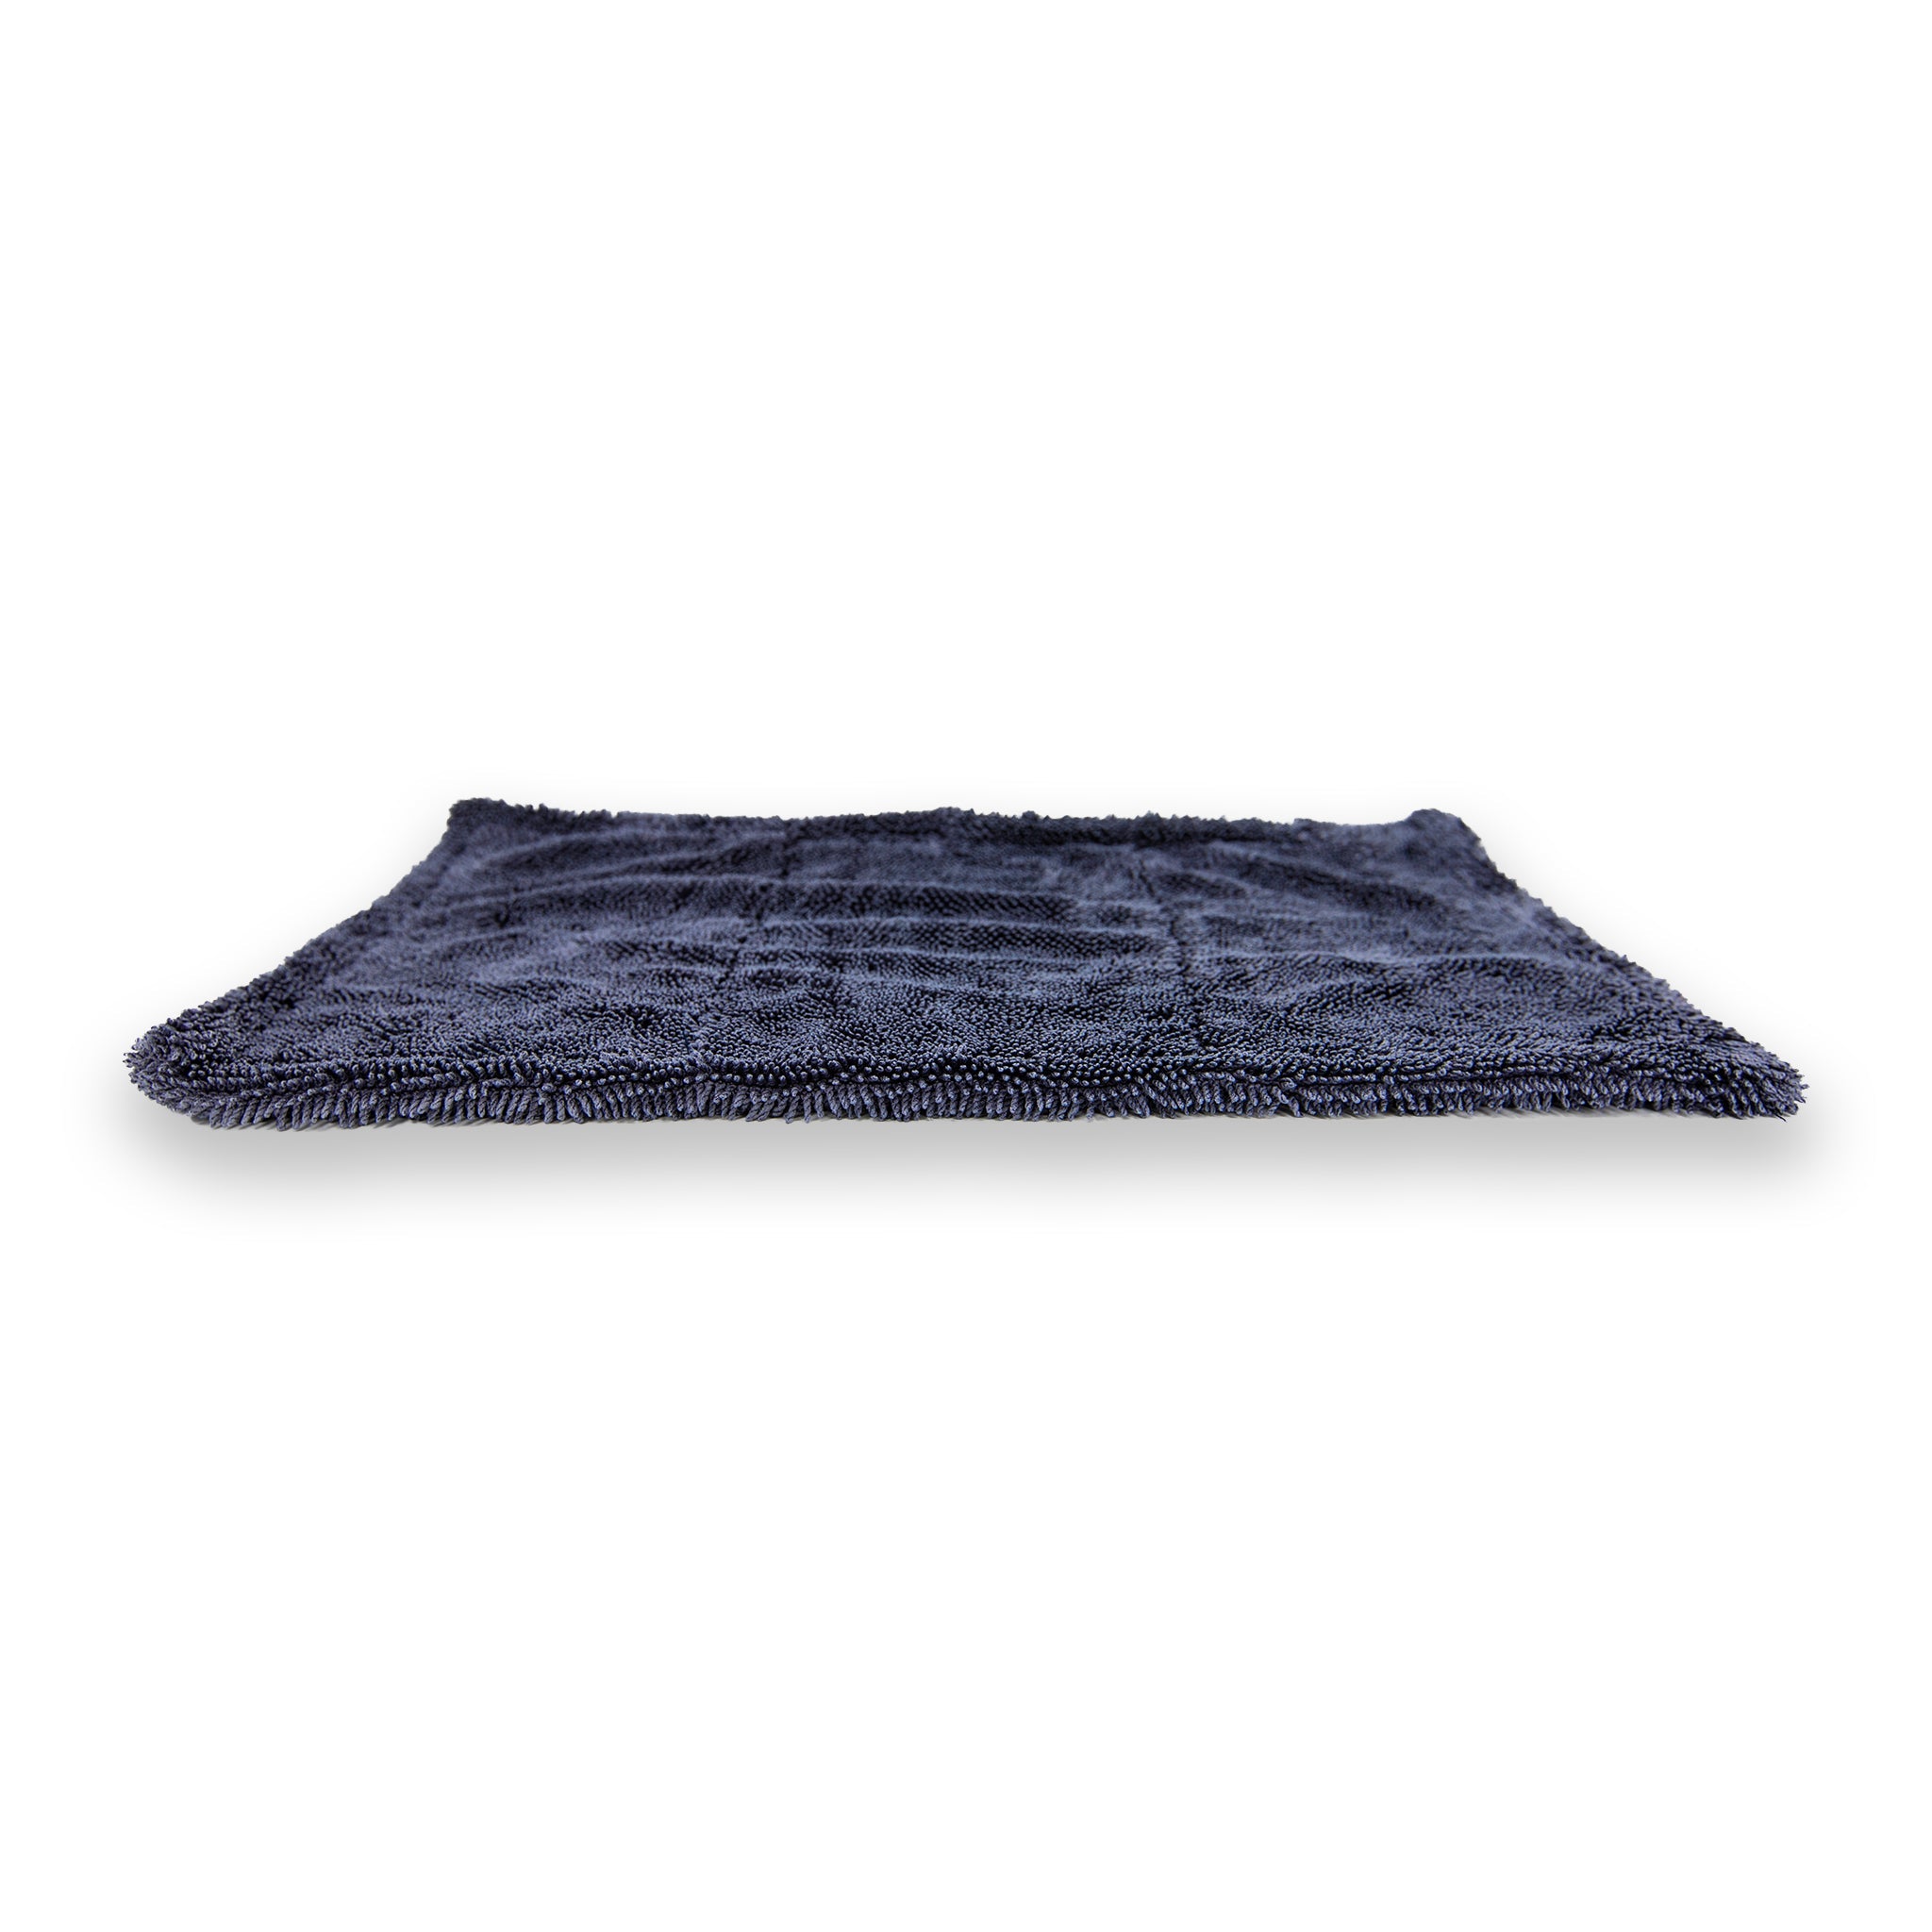 KLIN Drying Duo Towel | Small 14 x 9